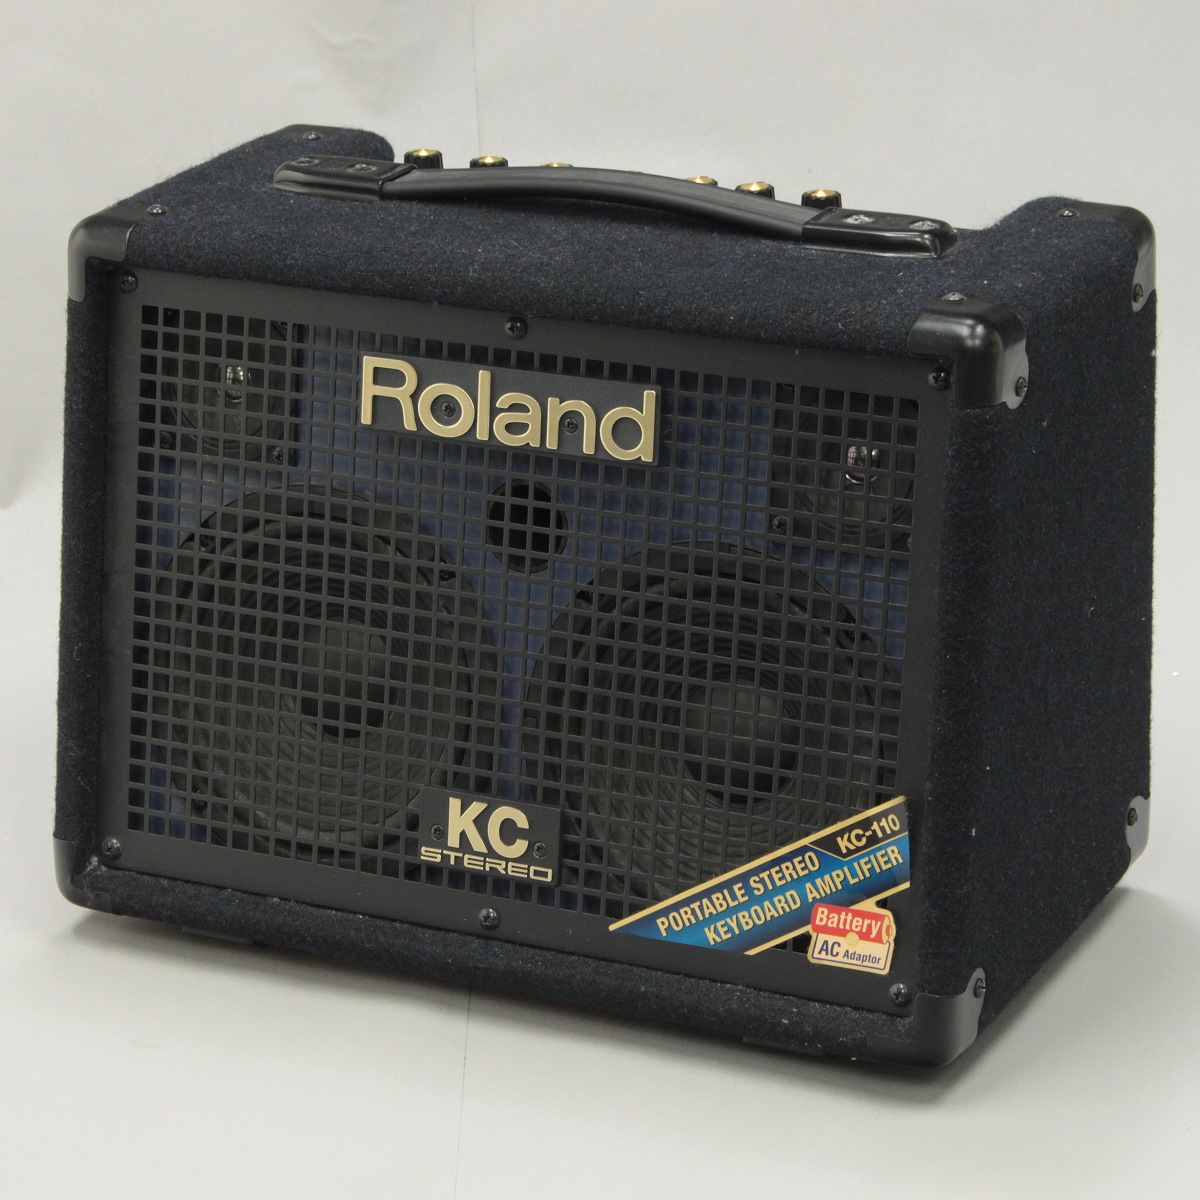 Roland KC-110 ステレオ キーボードアンプ - 配信機器・PA機器